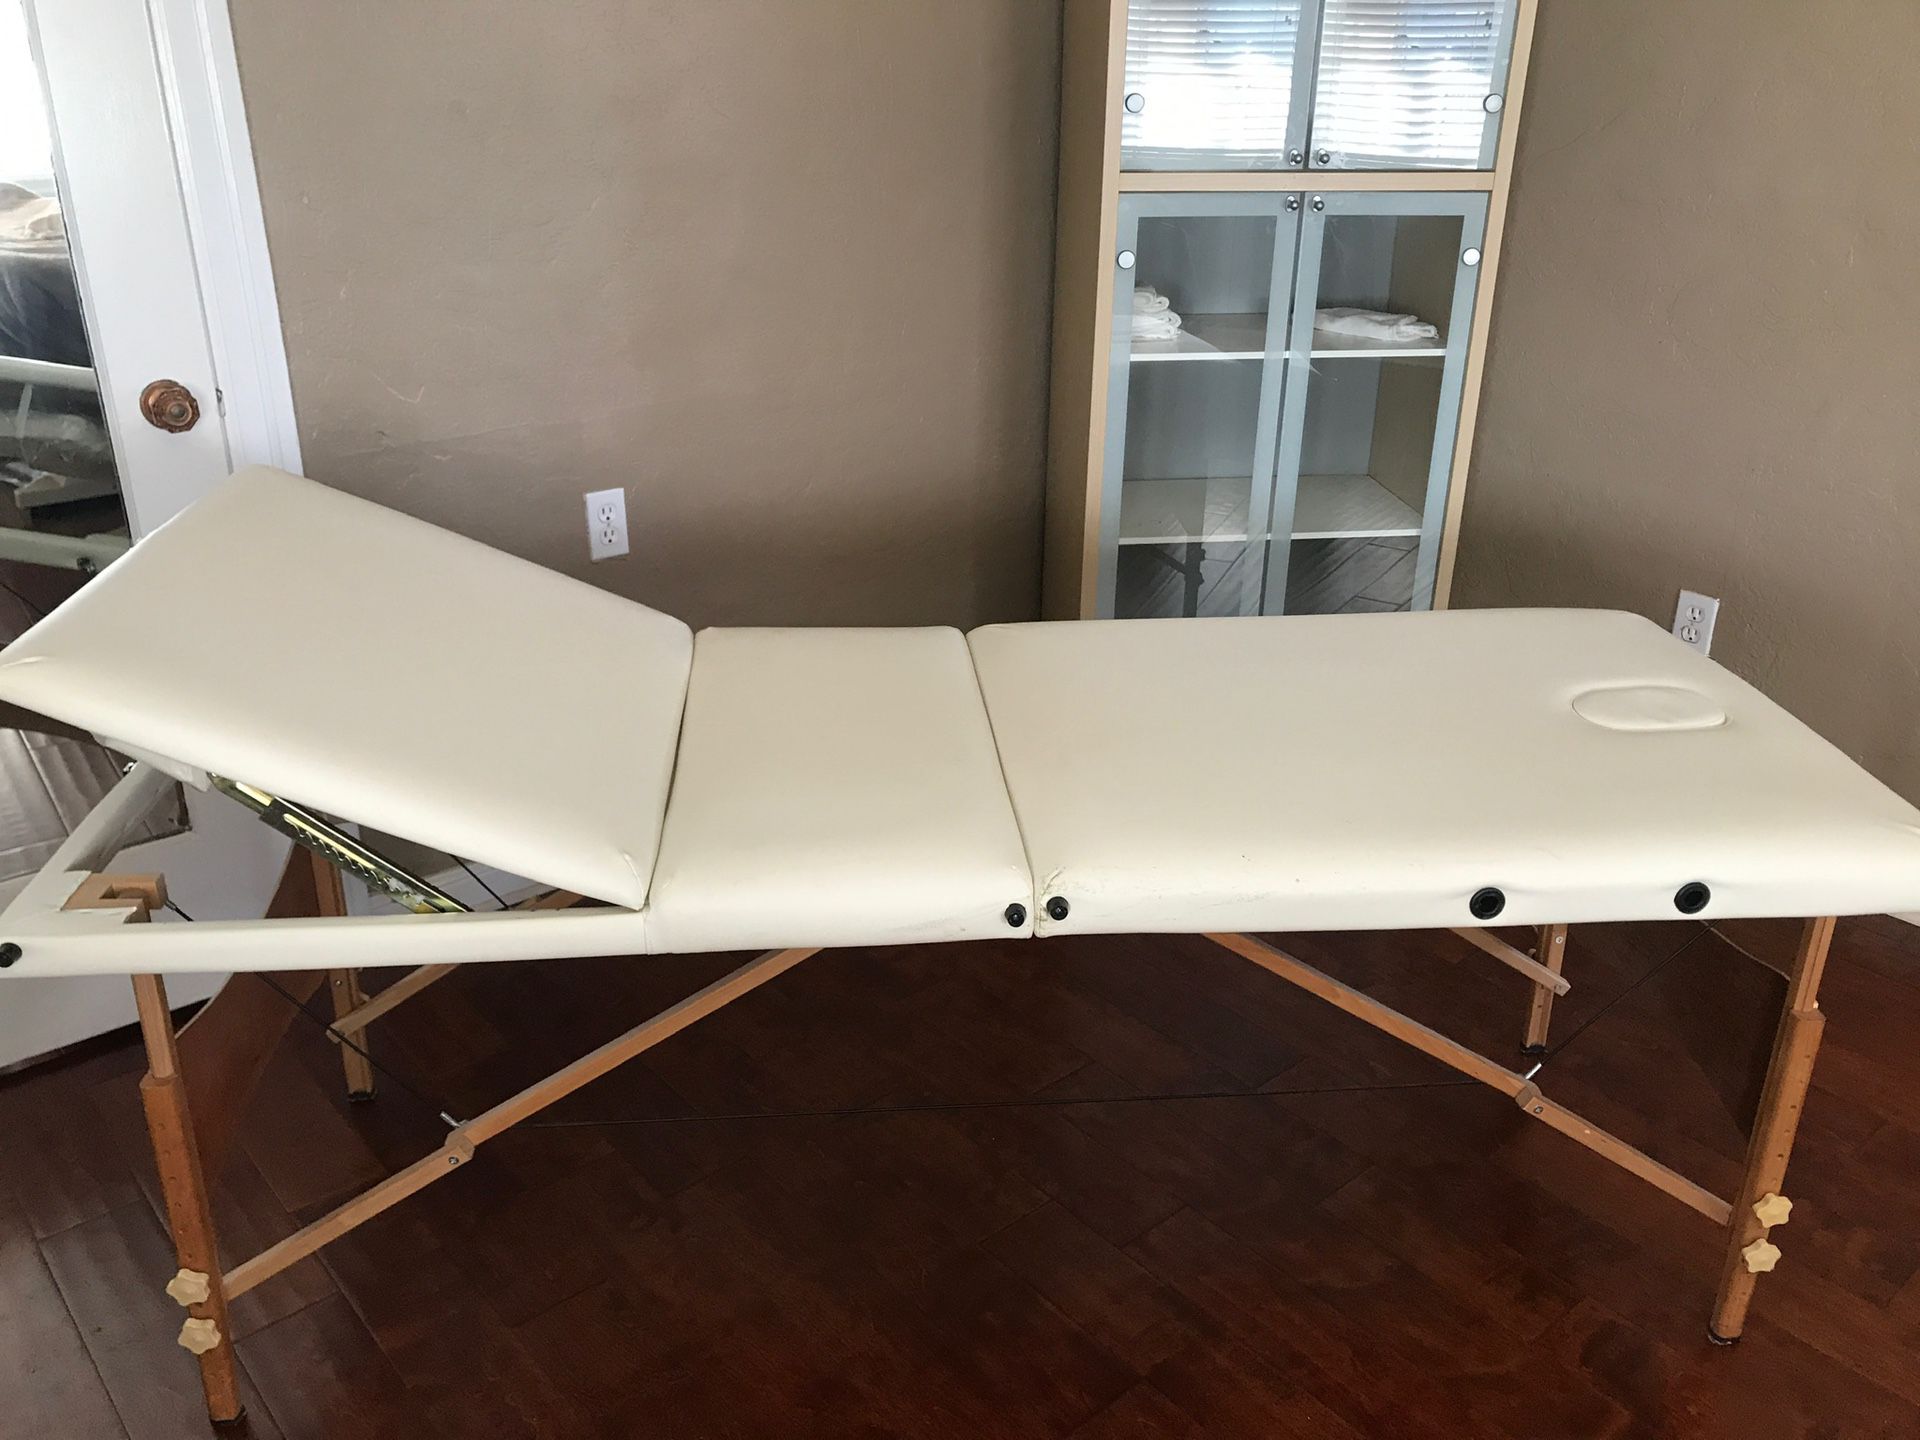 White folding spa table